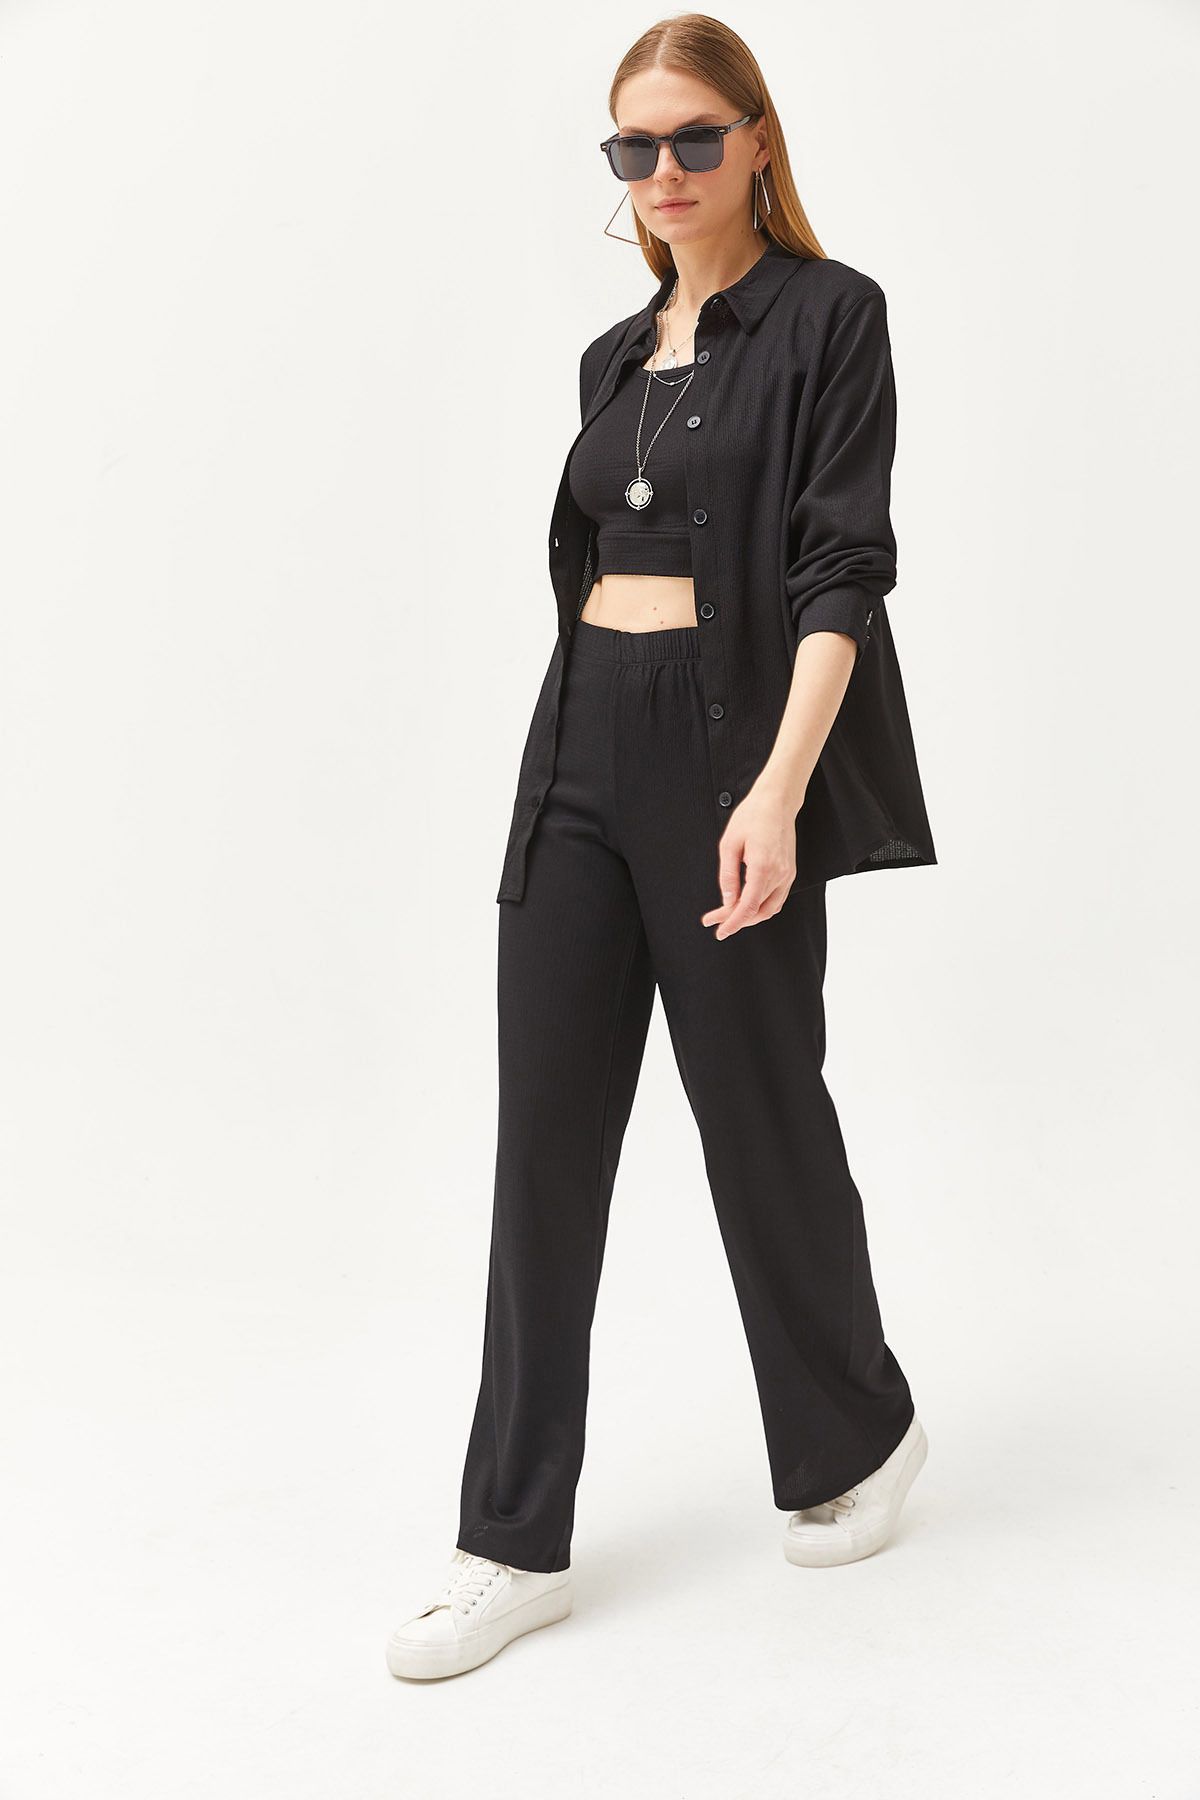 Olalook Kadın Siyah Gömlek Bluz Pantolon 3'lü Takım TKM-19000270